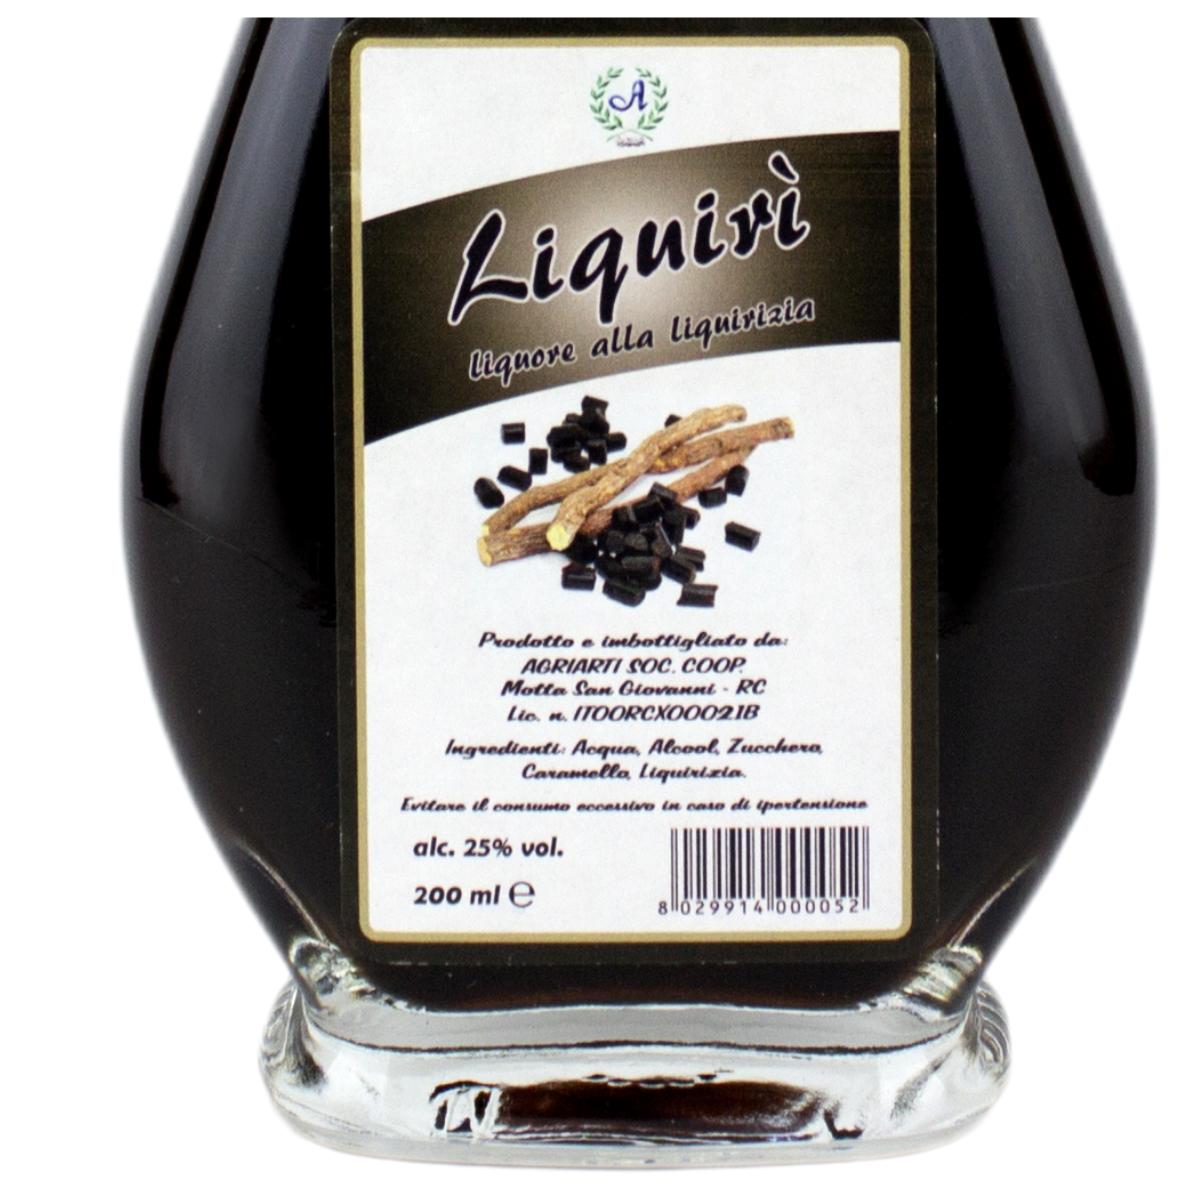 Liquore di Calabria LIQUIRIZIA 20cl - Avolicino